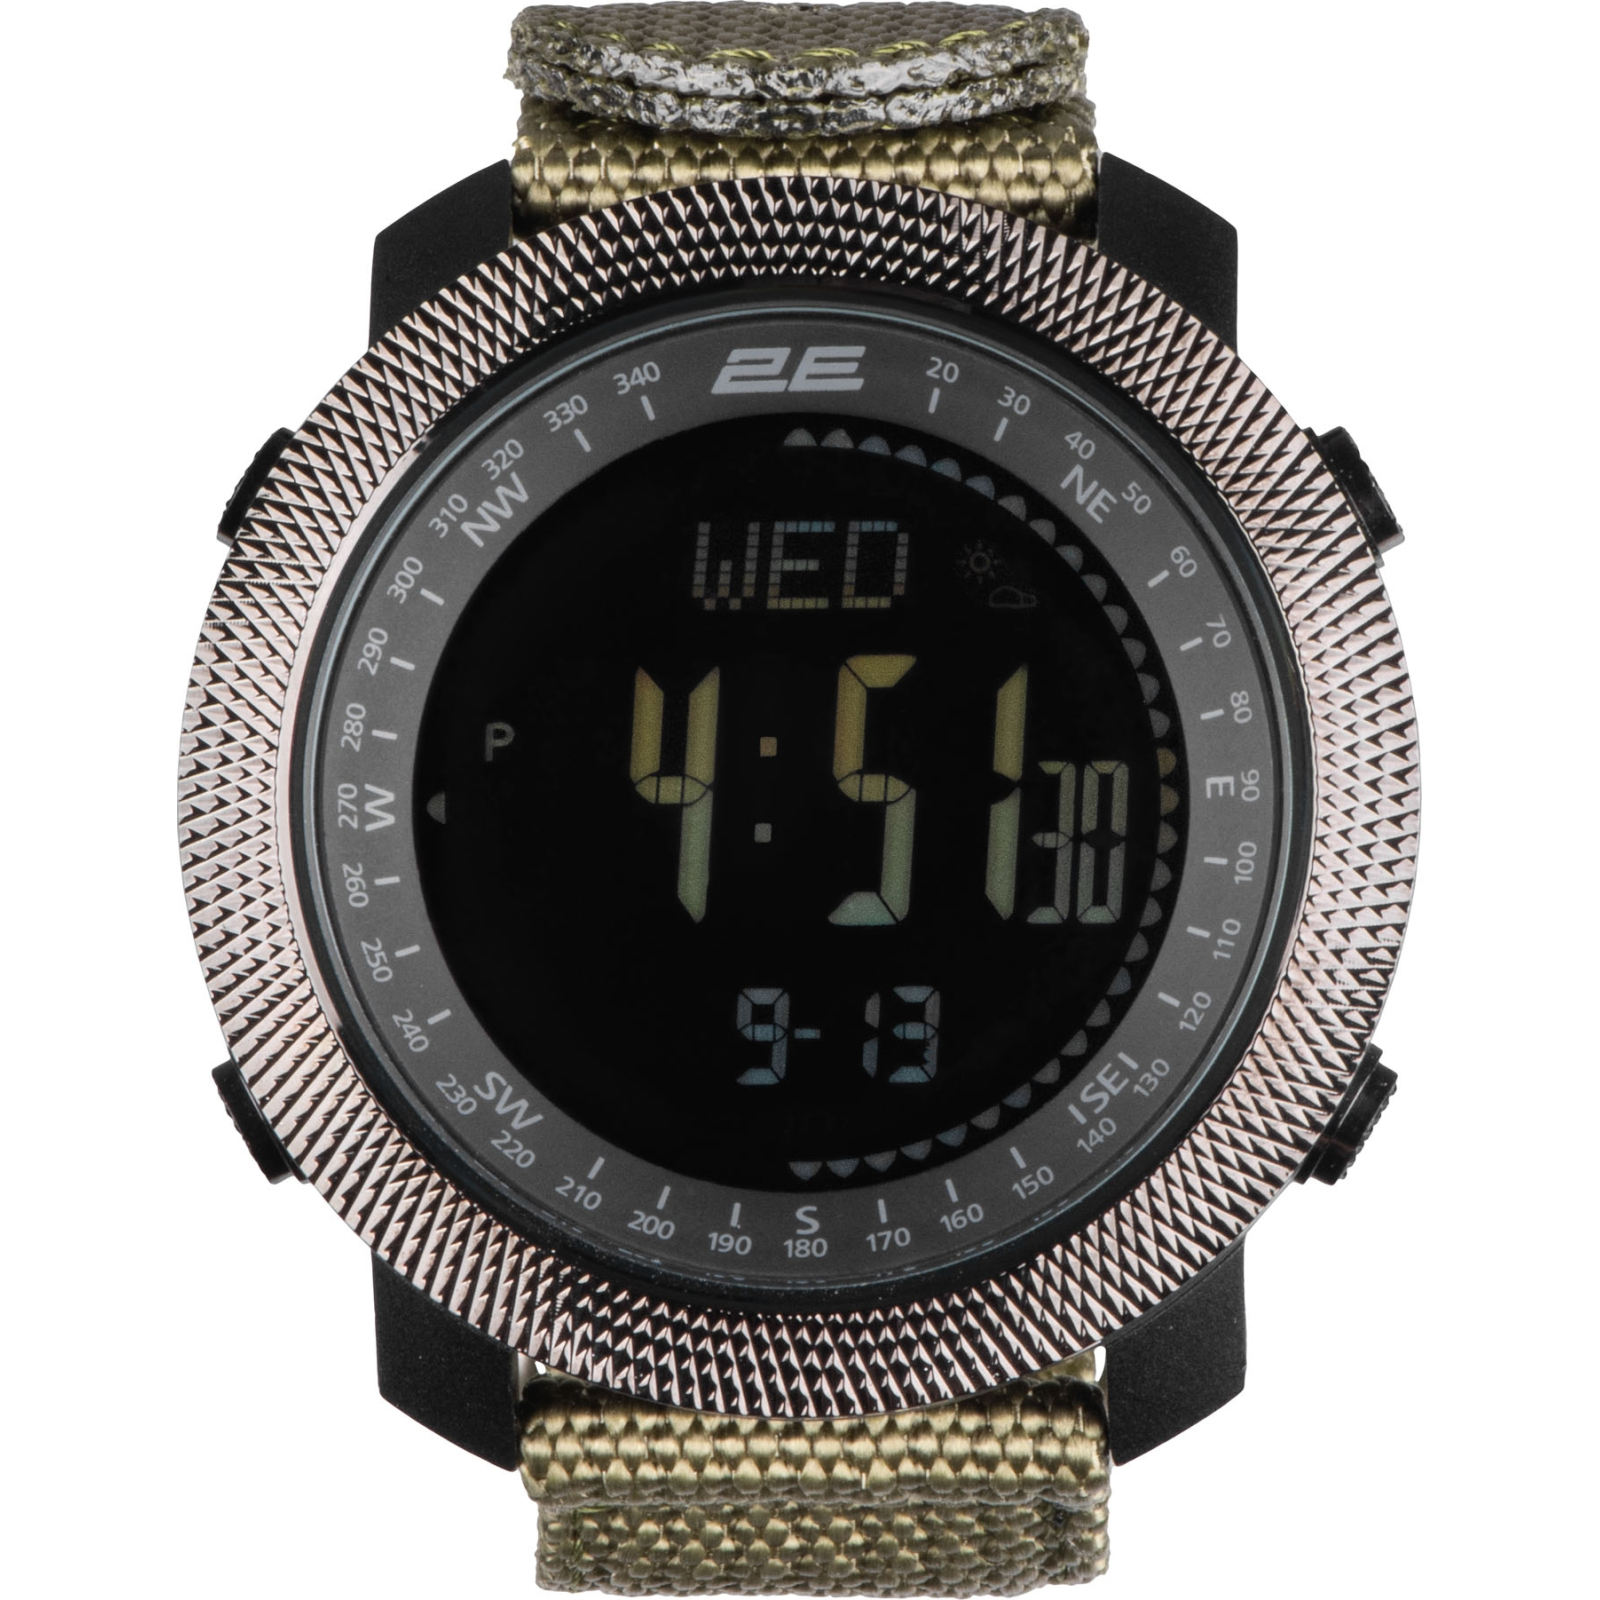 Смарт-часы 2E Trek Pro Black-Green з компасом, барометром та крокоміром (2E-TCW30BK) изображение 2